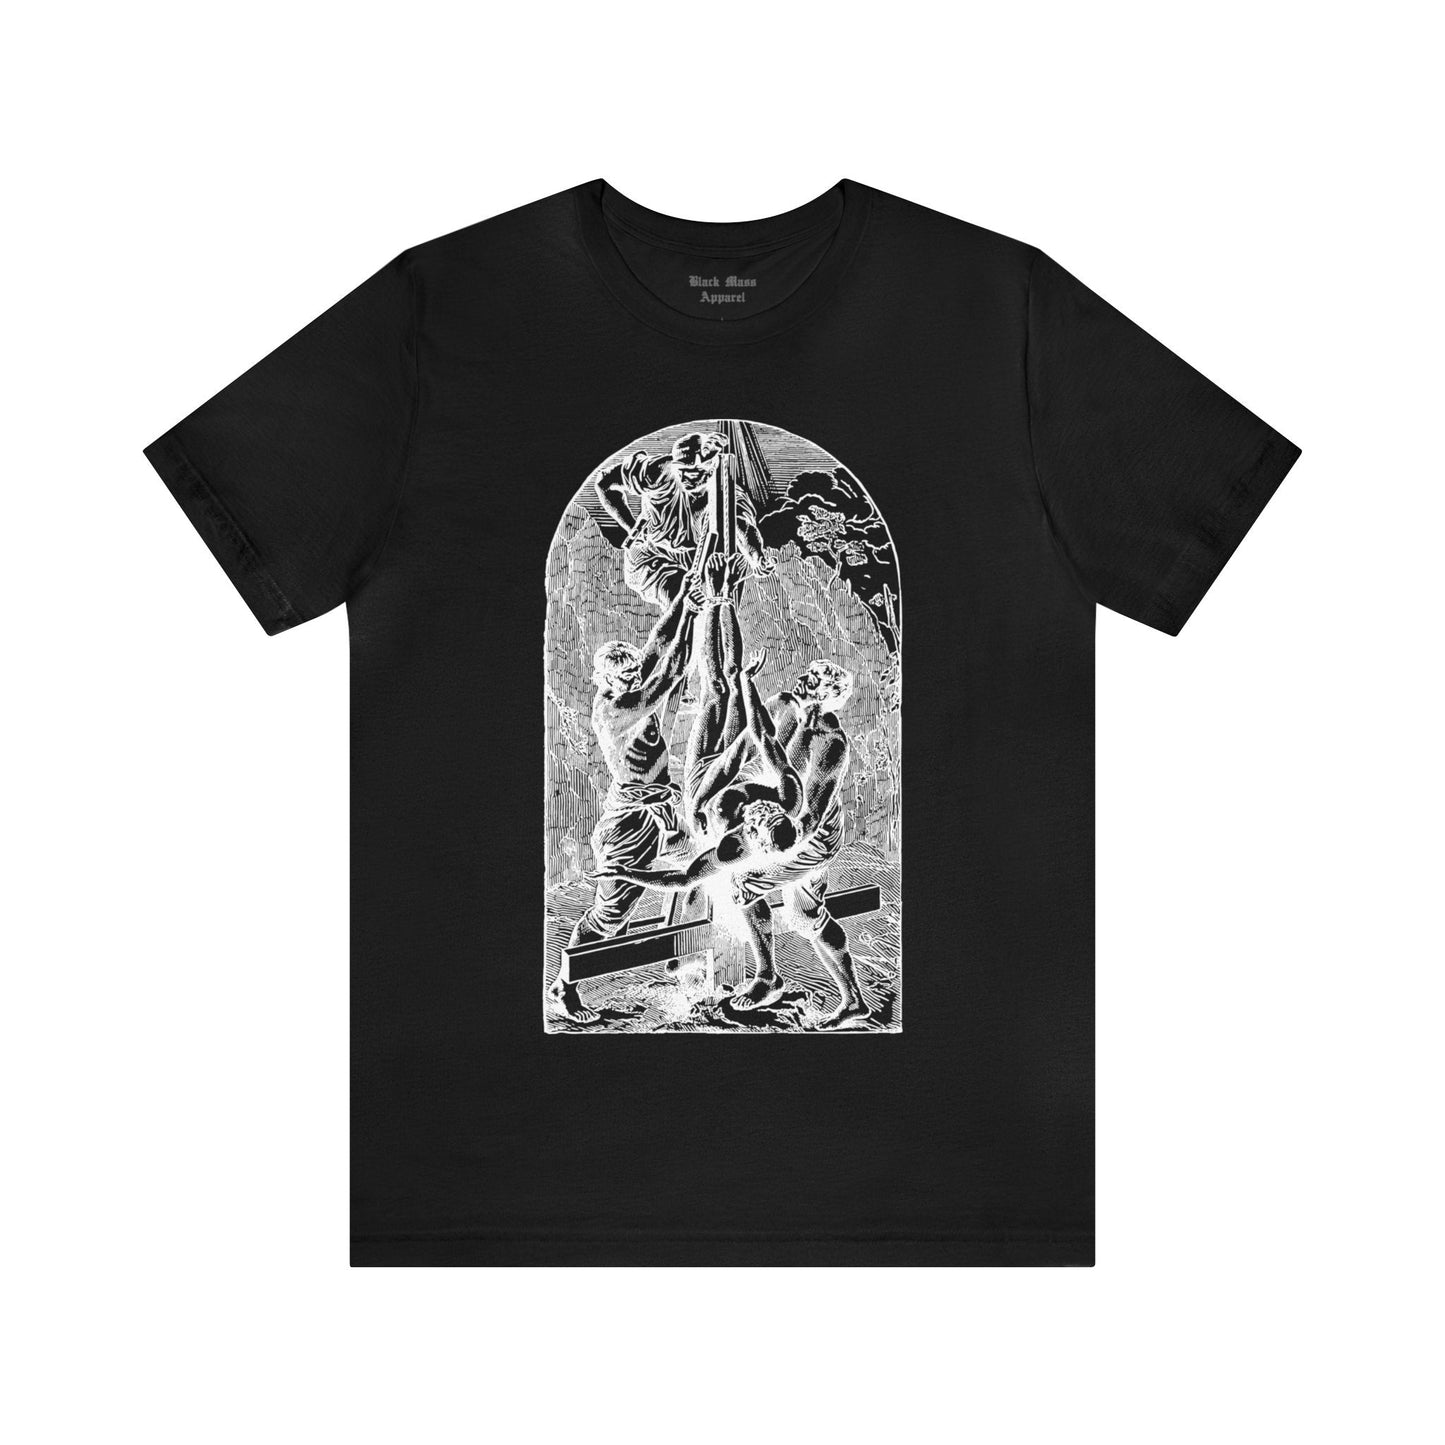 Peter Crucified Upside Down - Black Mass Apparel - T-Shirt